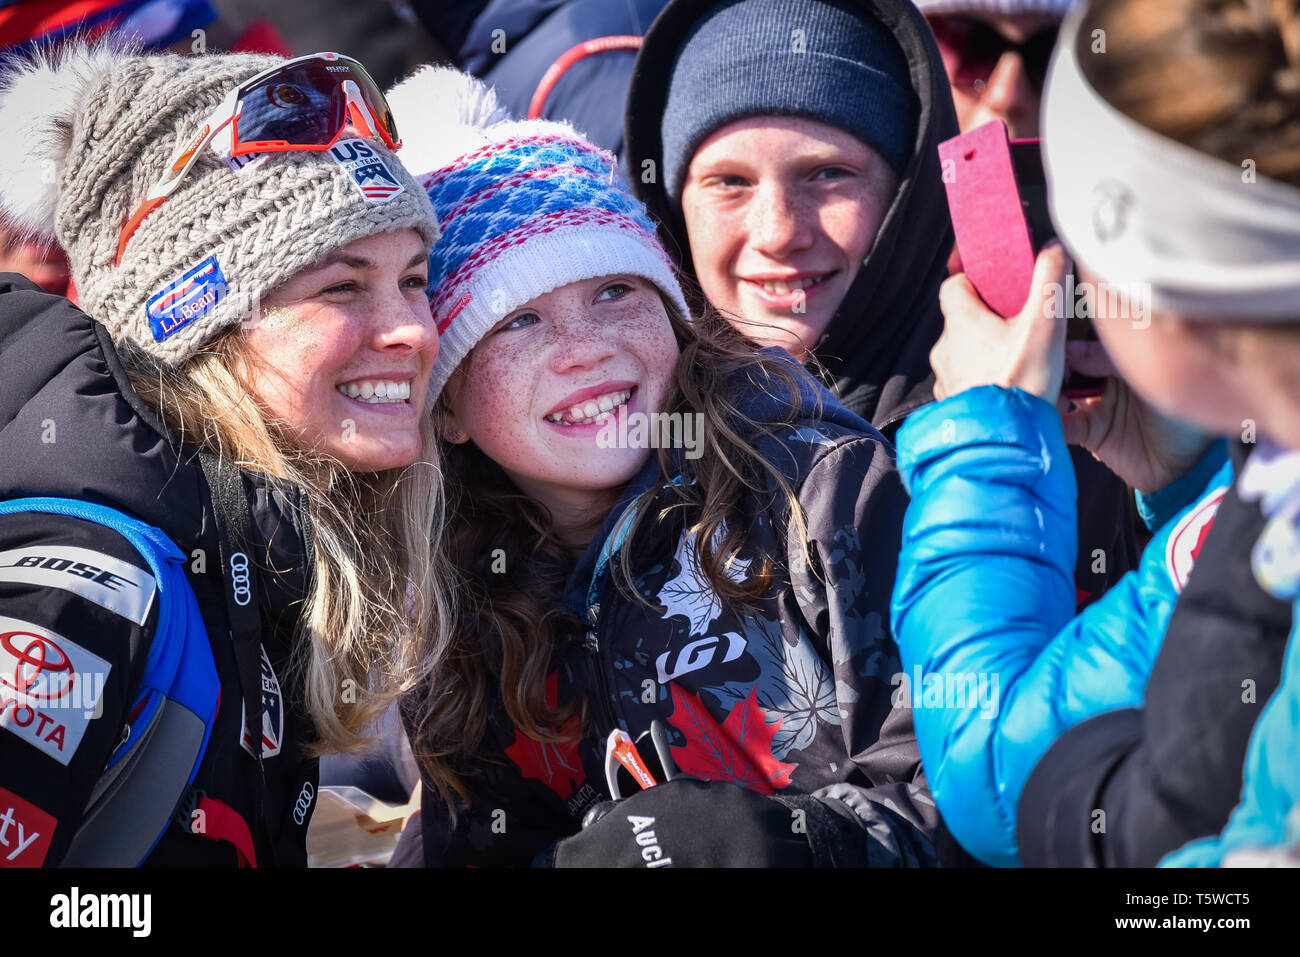 Nosotros miembro del equipo de esquí cross country Jessie Diggins (izquierda) posa con ventiladores en el FIS World Cup Carreras de esquí cross country en la Ciudad de Quebec, Canadá, 2019. Foto de stock